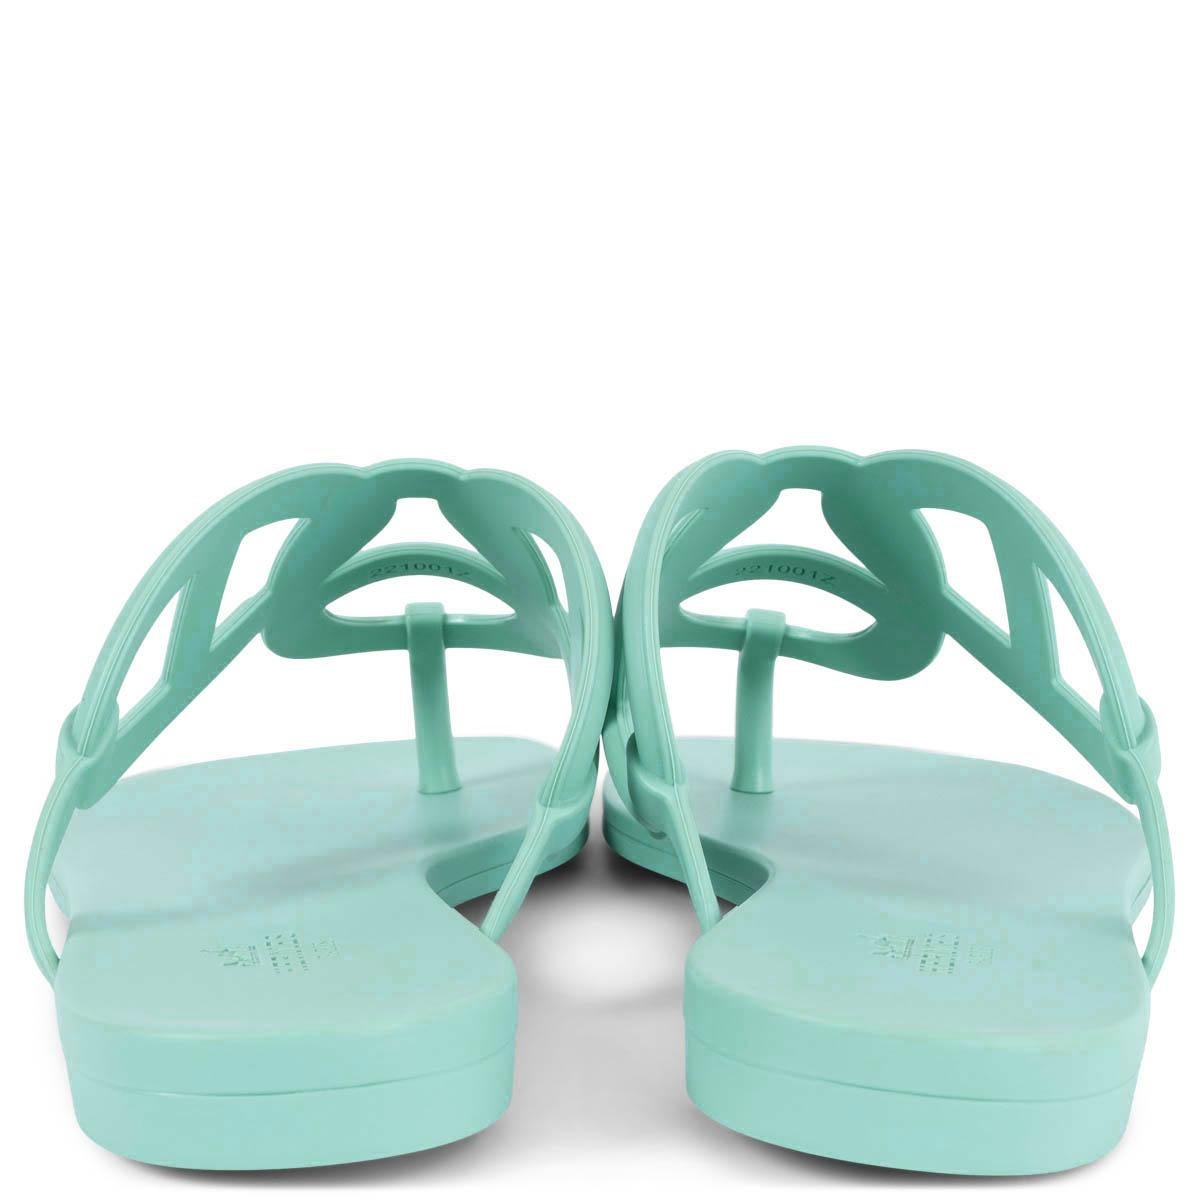 Women's HERMES Vert Embrun green rubber EGERIE Thong Sandals Shoes 38